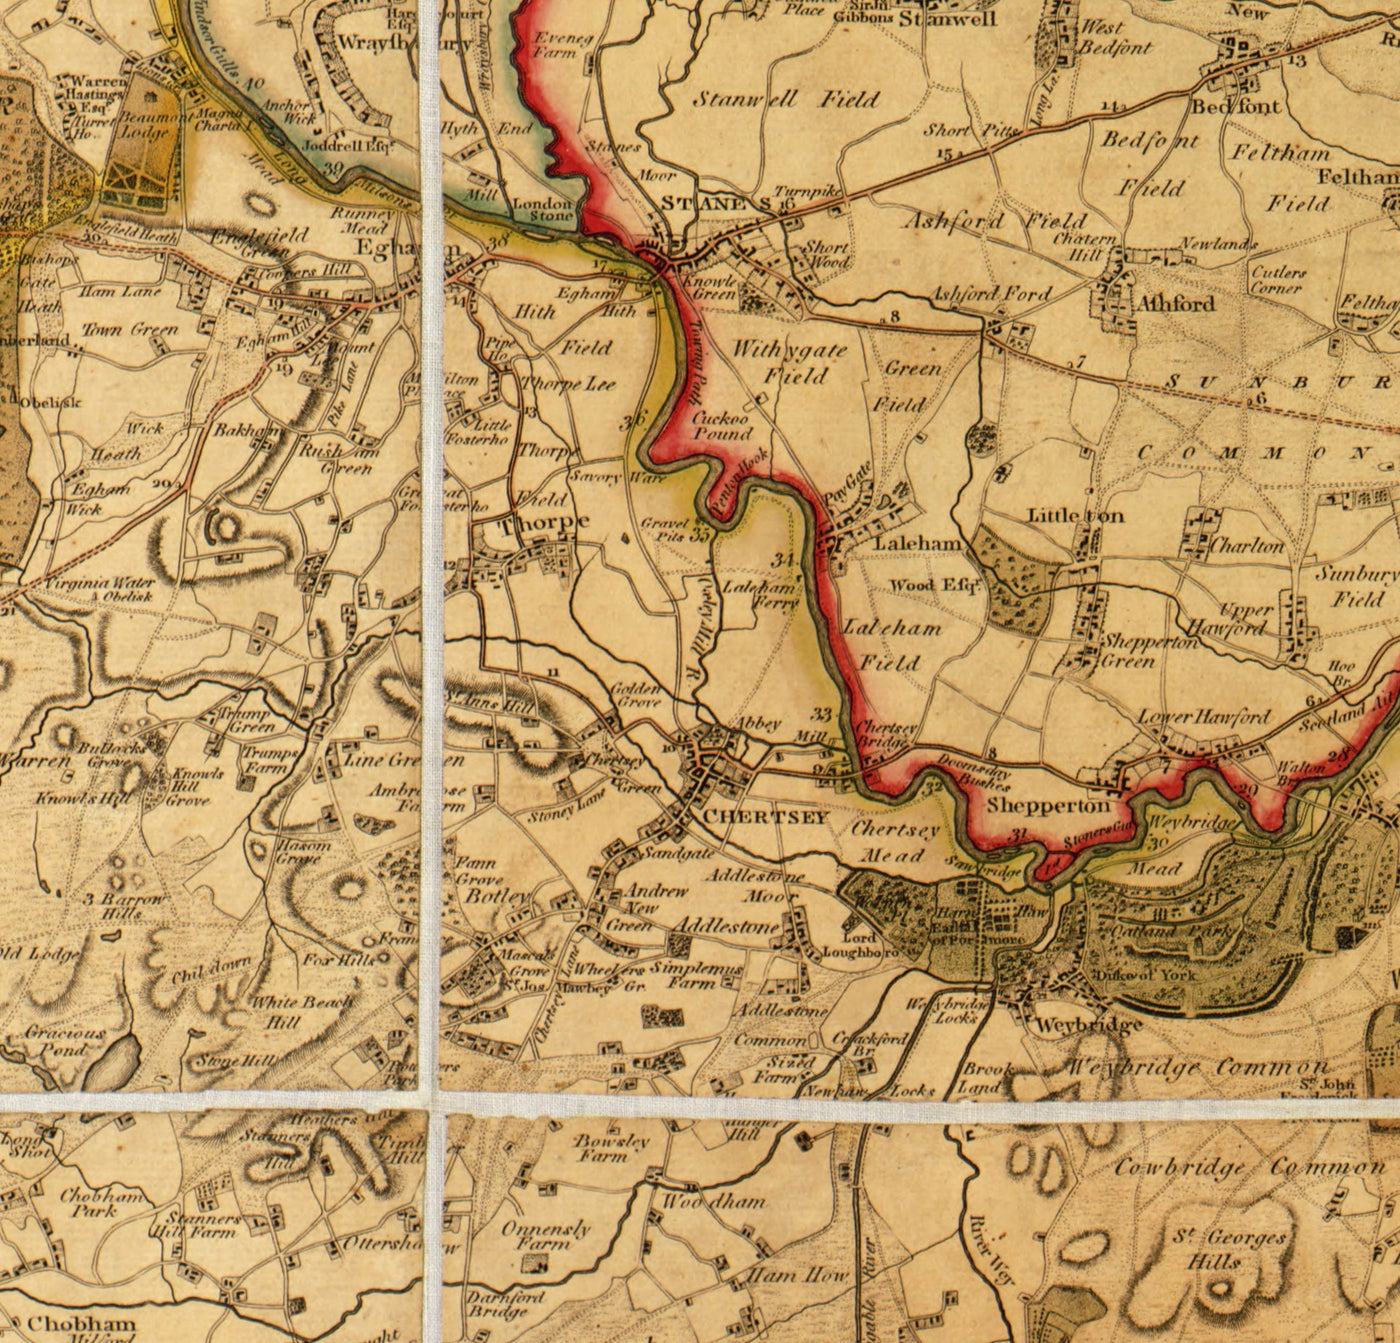 Antiguo mapa de Londres y sus alrededores (25 millas) en 1790, por W. Faden